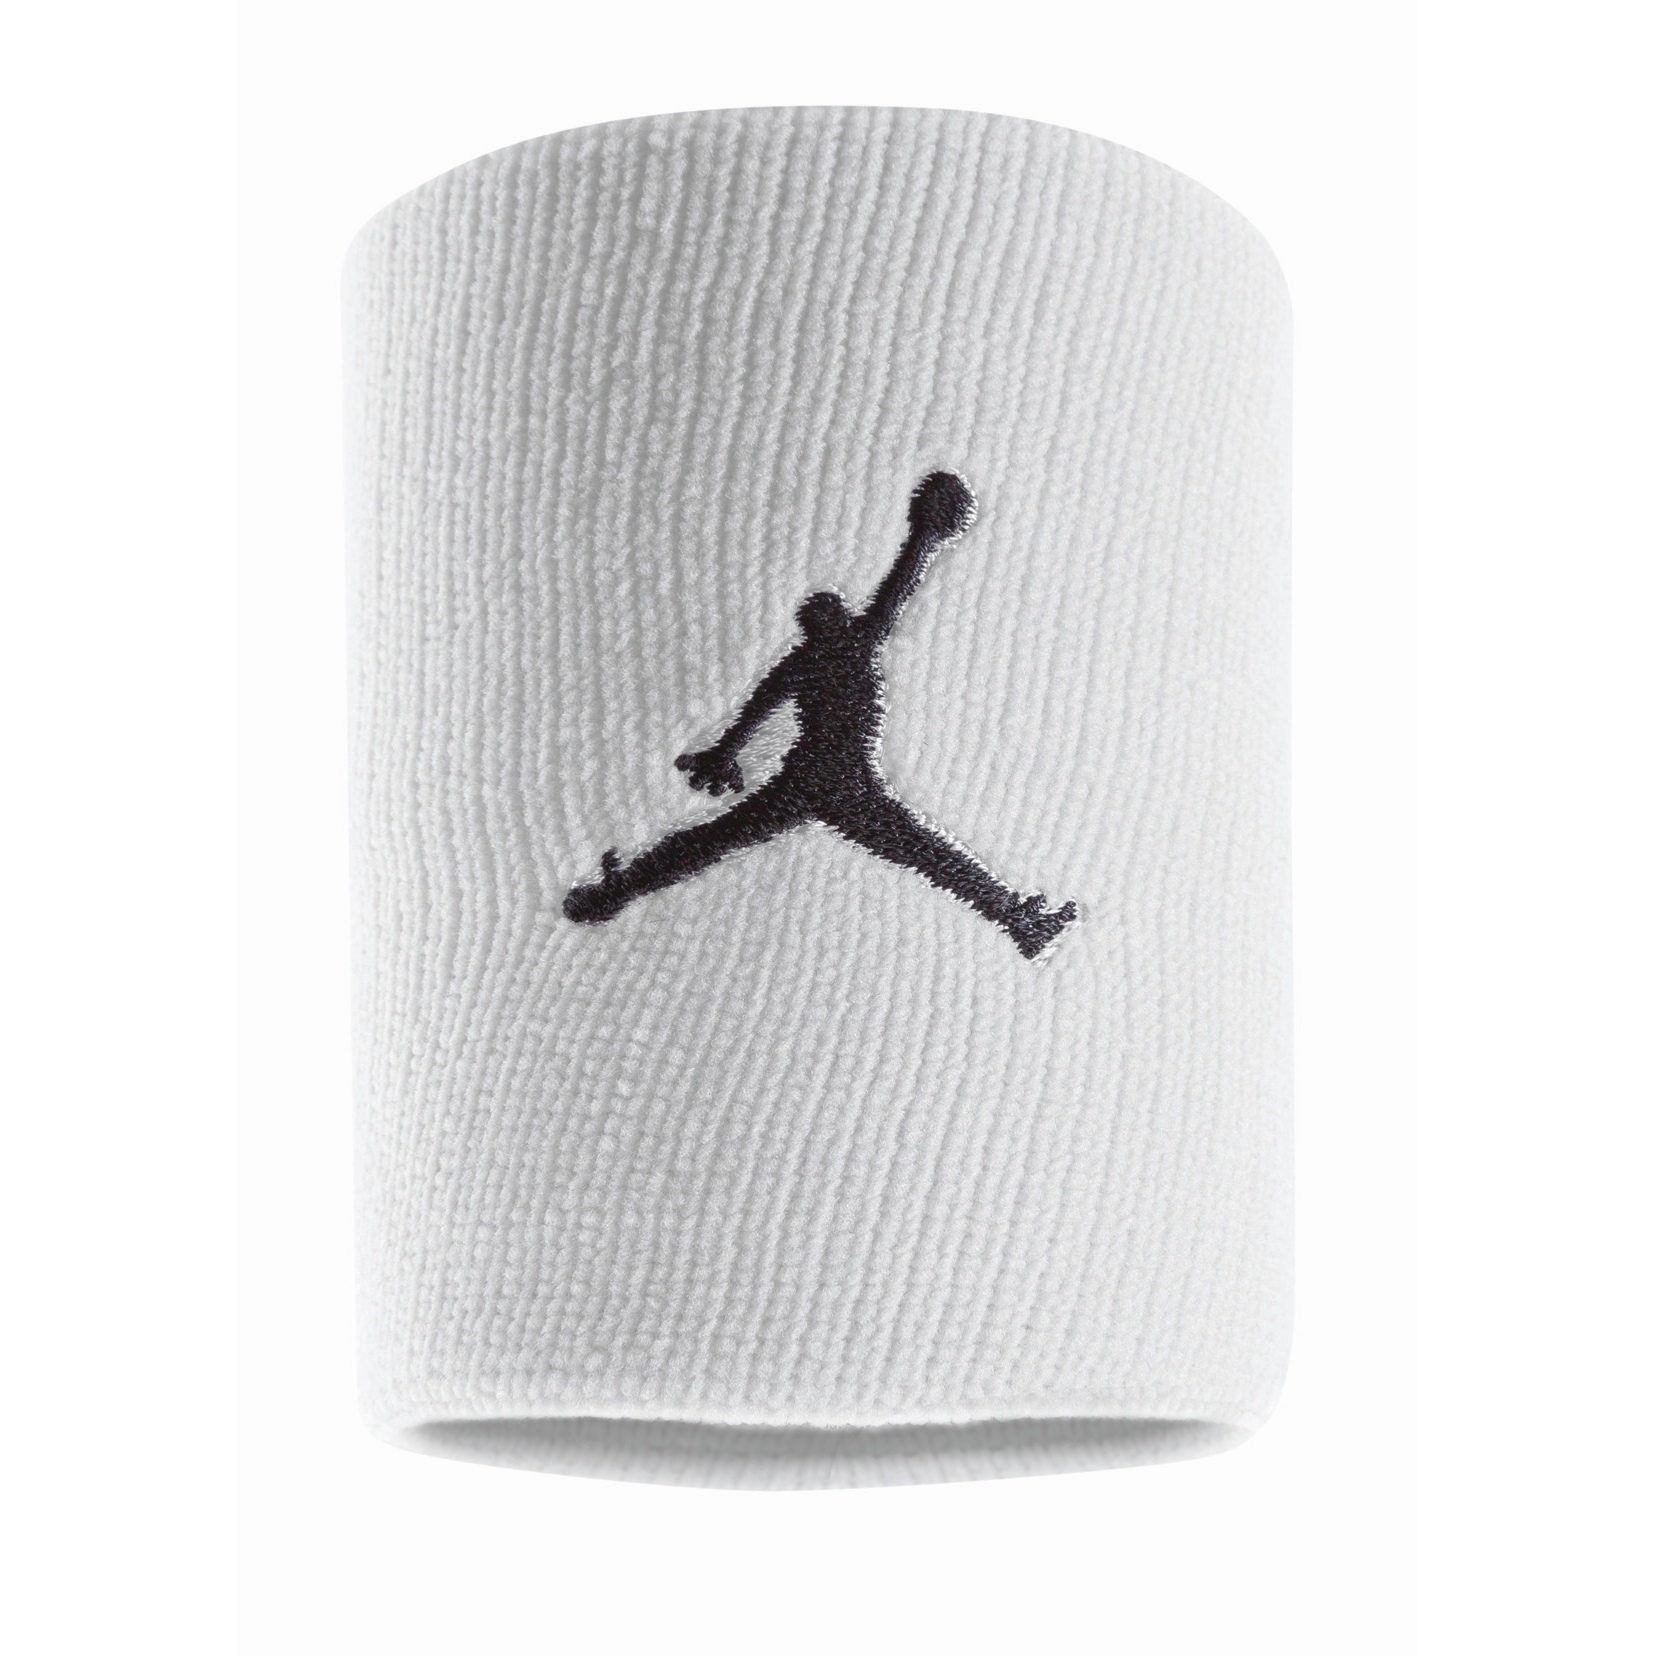 Produktbild von Nike Jordan Jumpman Schweißband - white/black 101